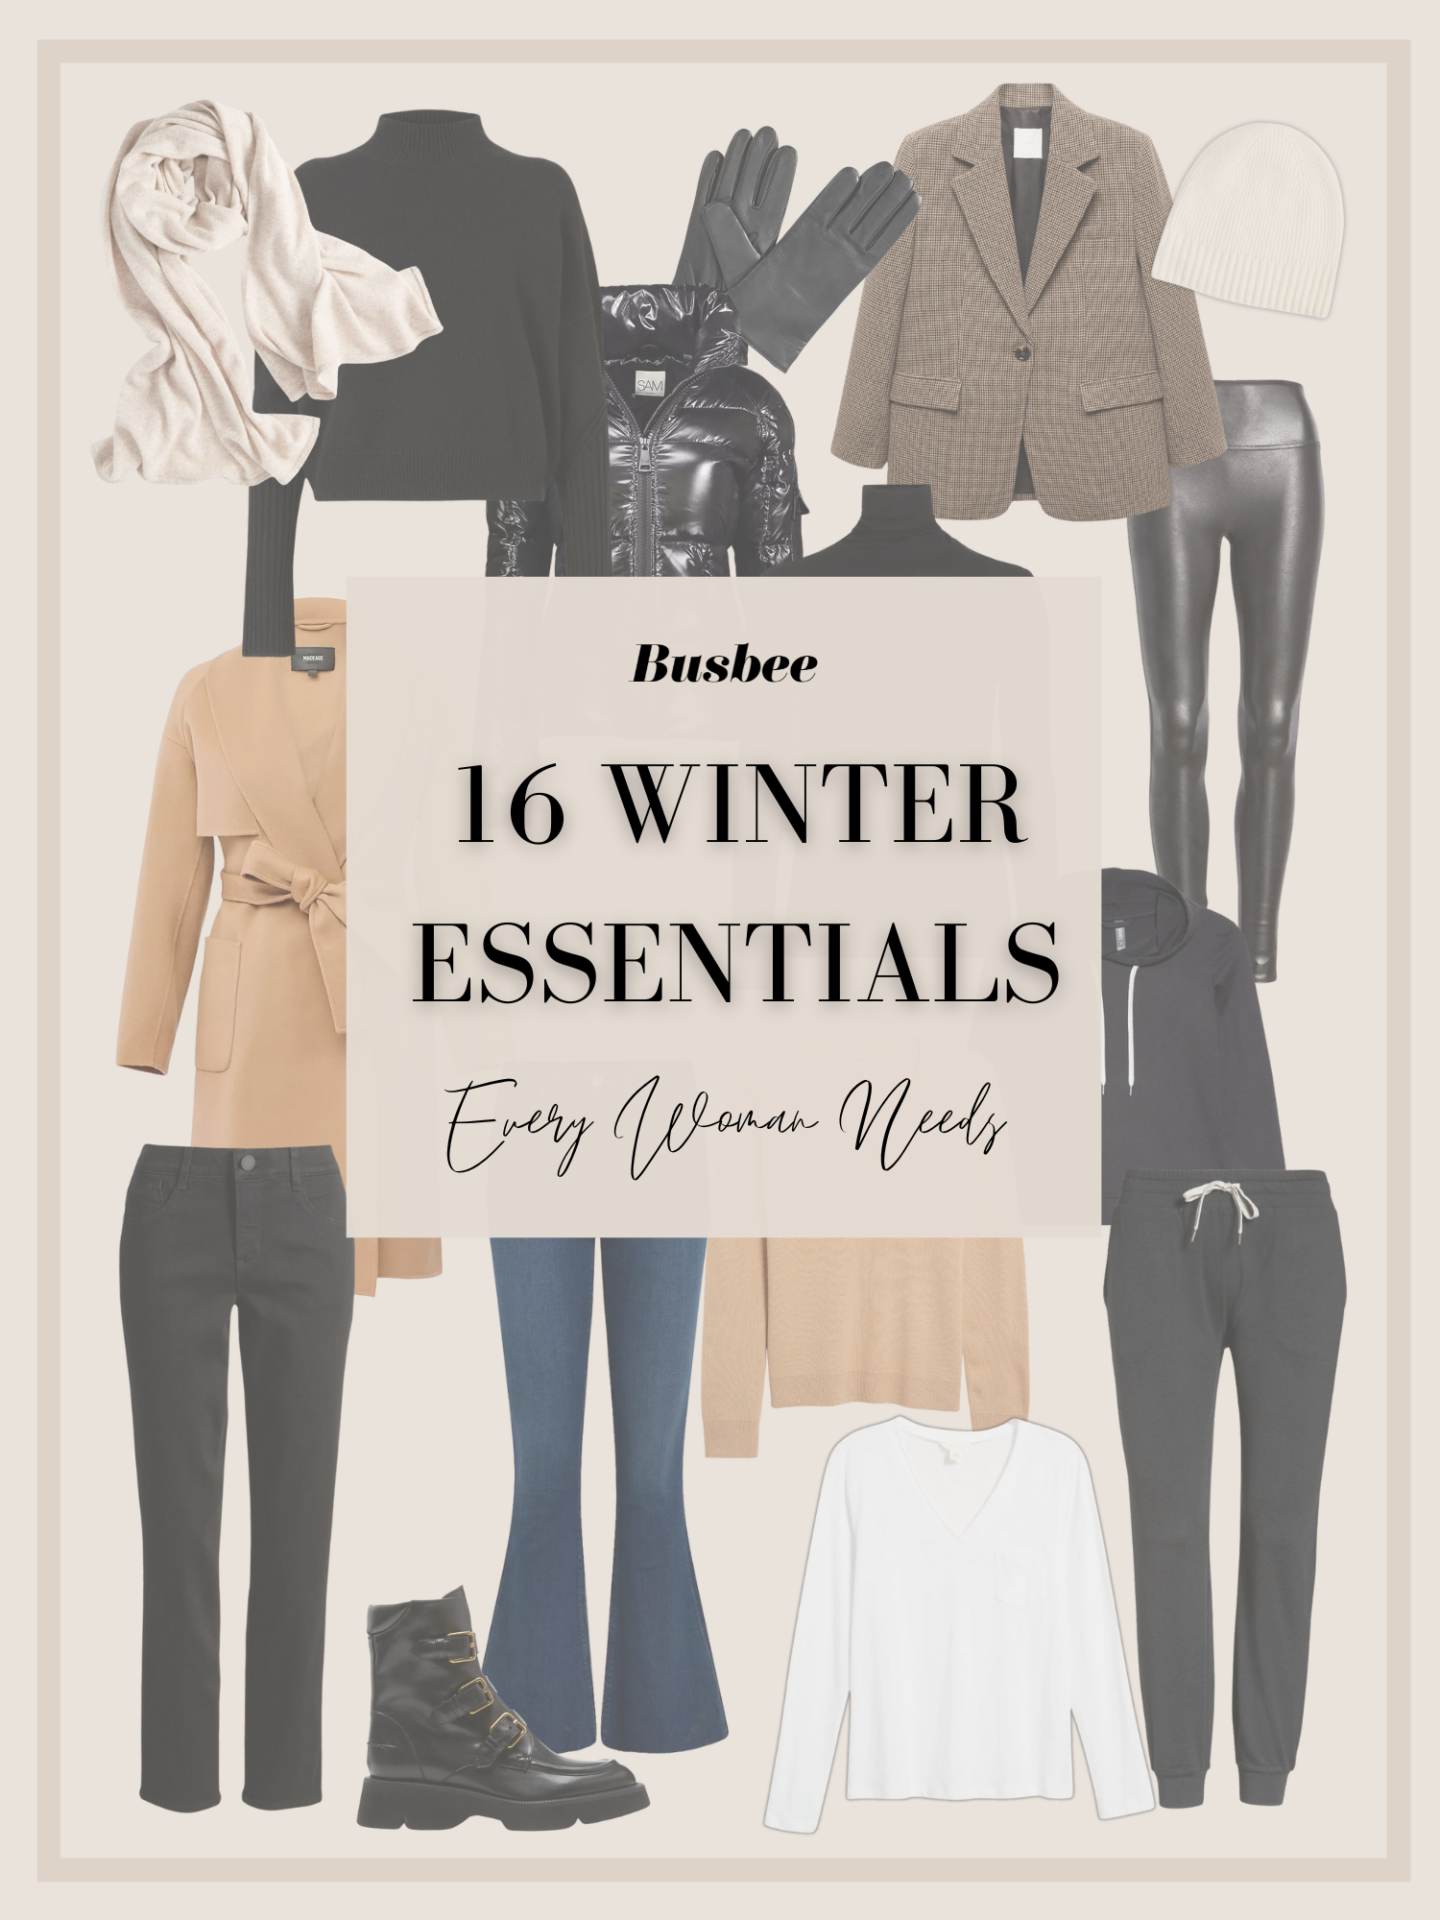 16 winter essentials for women